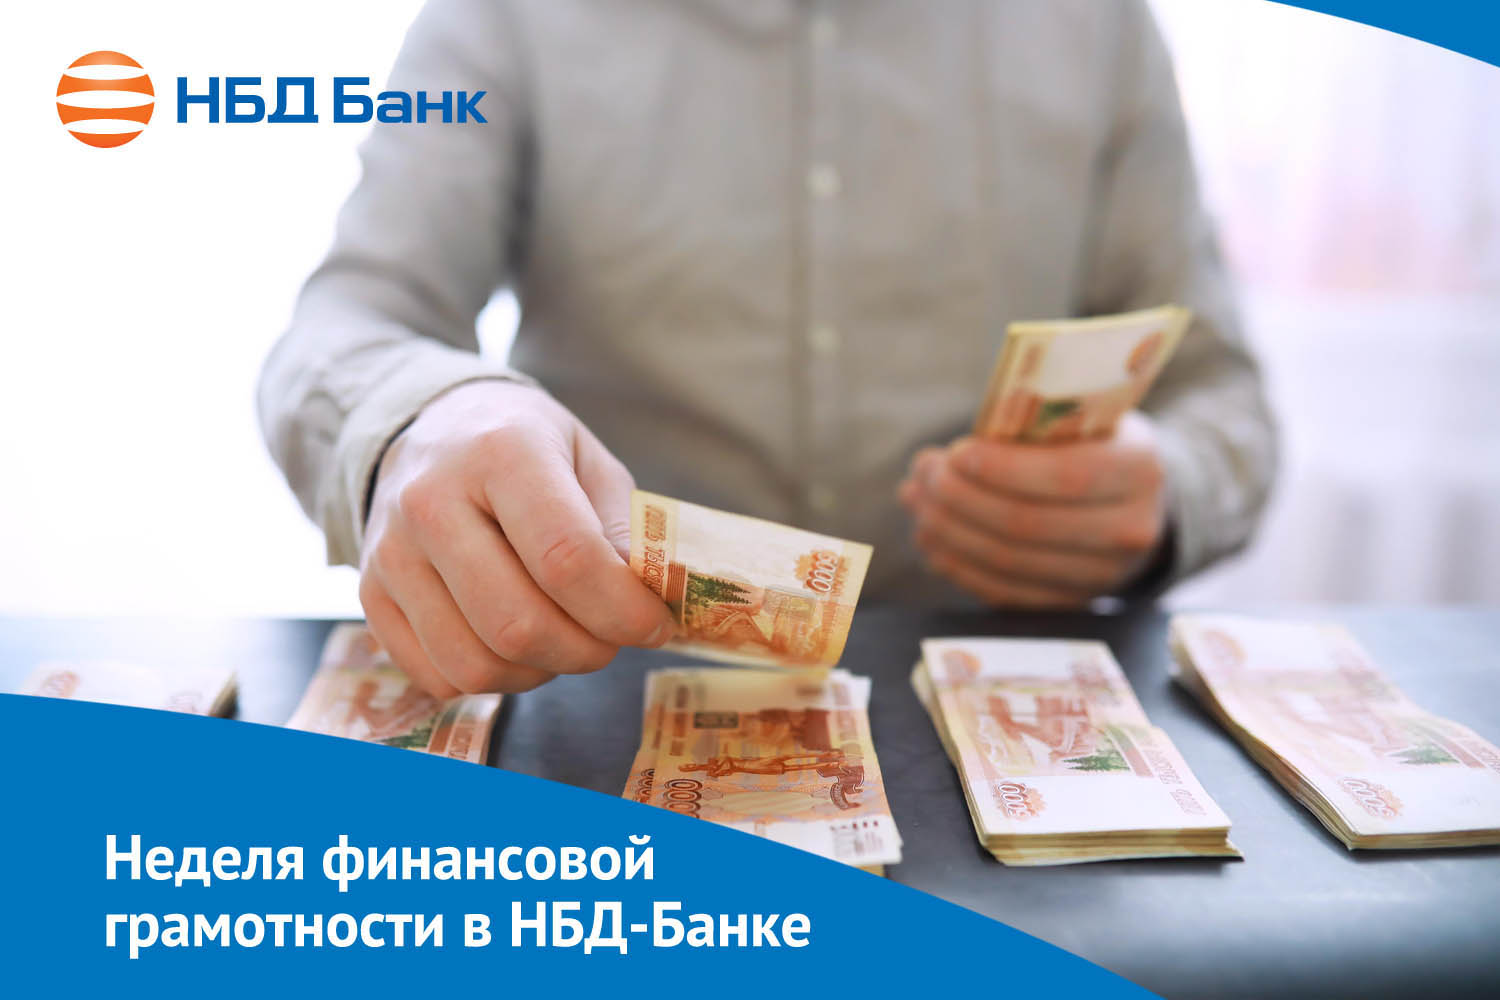 В НБД-Банке подвели итоги «Недели финансовой грамотности»